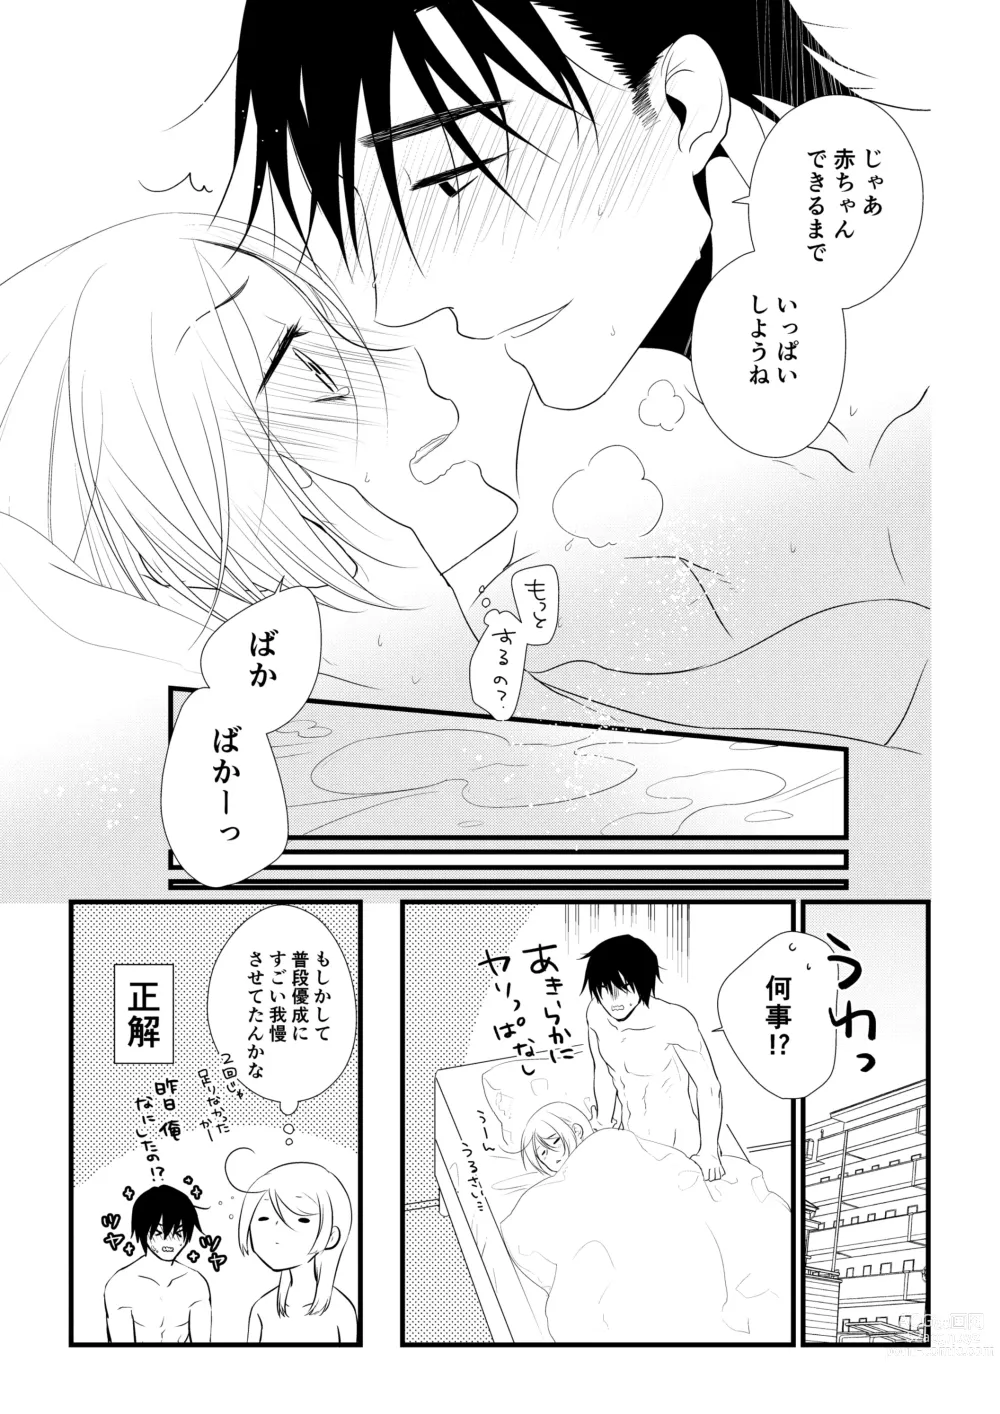 Page 132 of doujinshi Itsuki to Yuusei